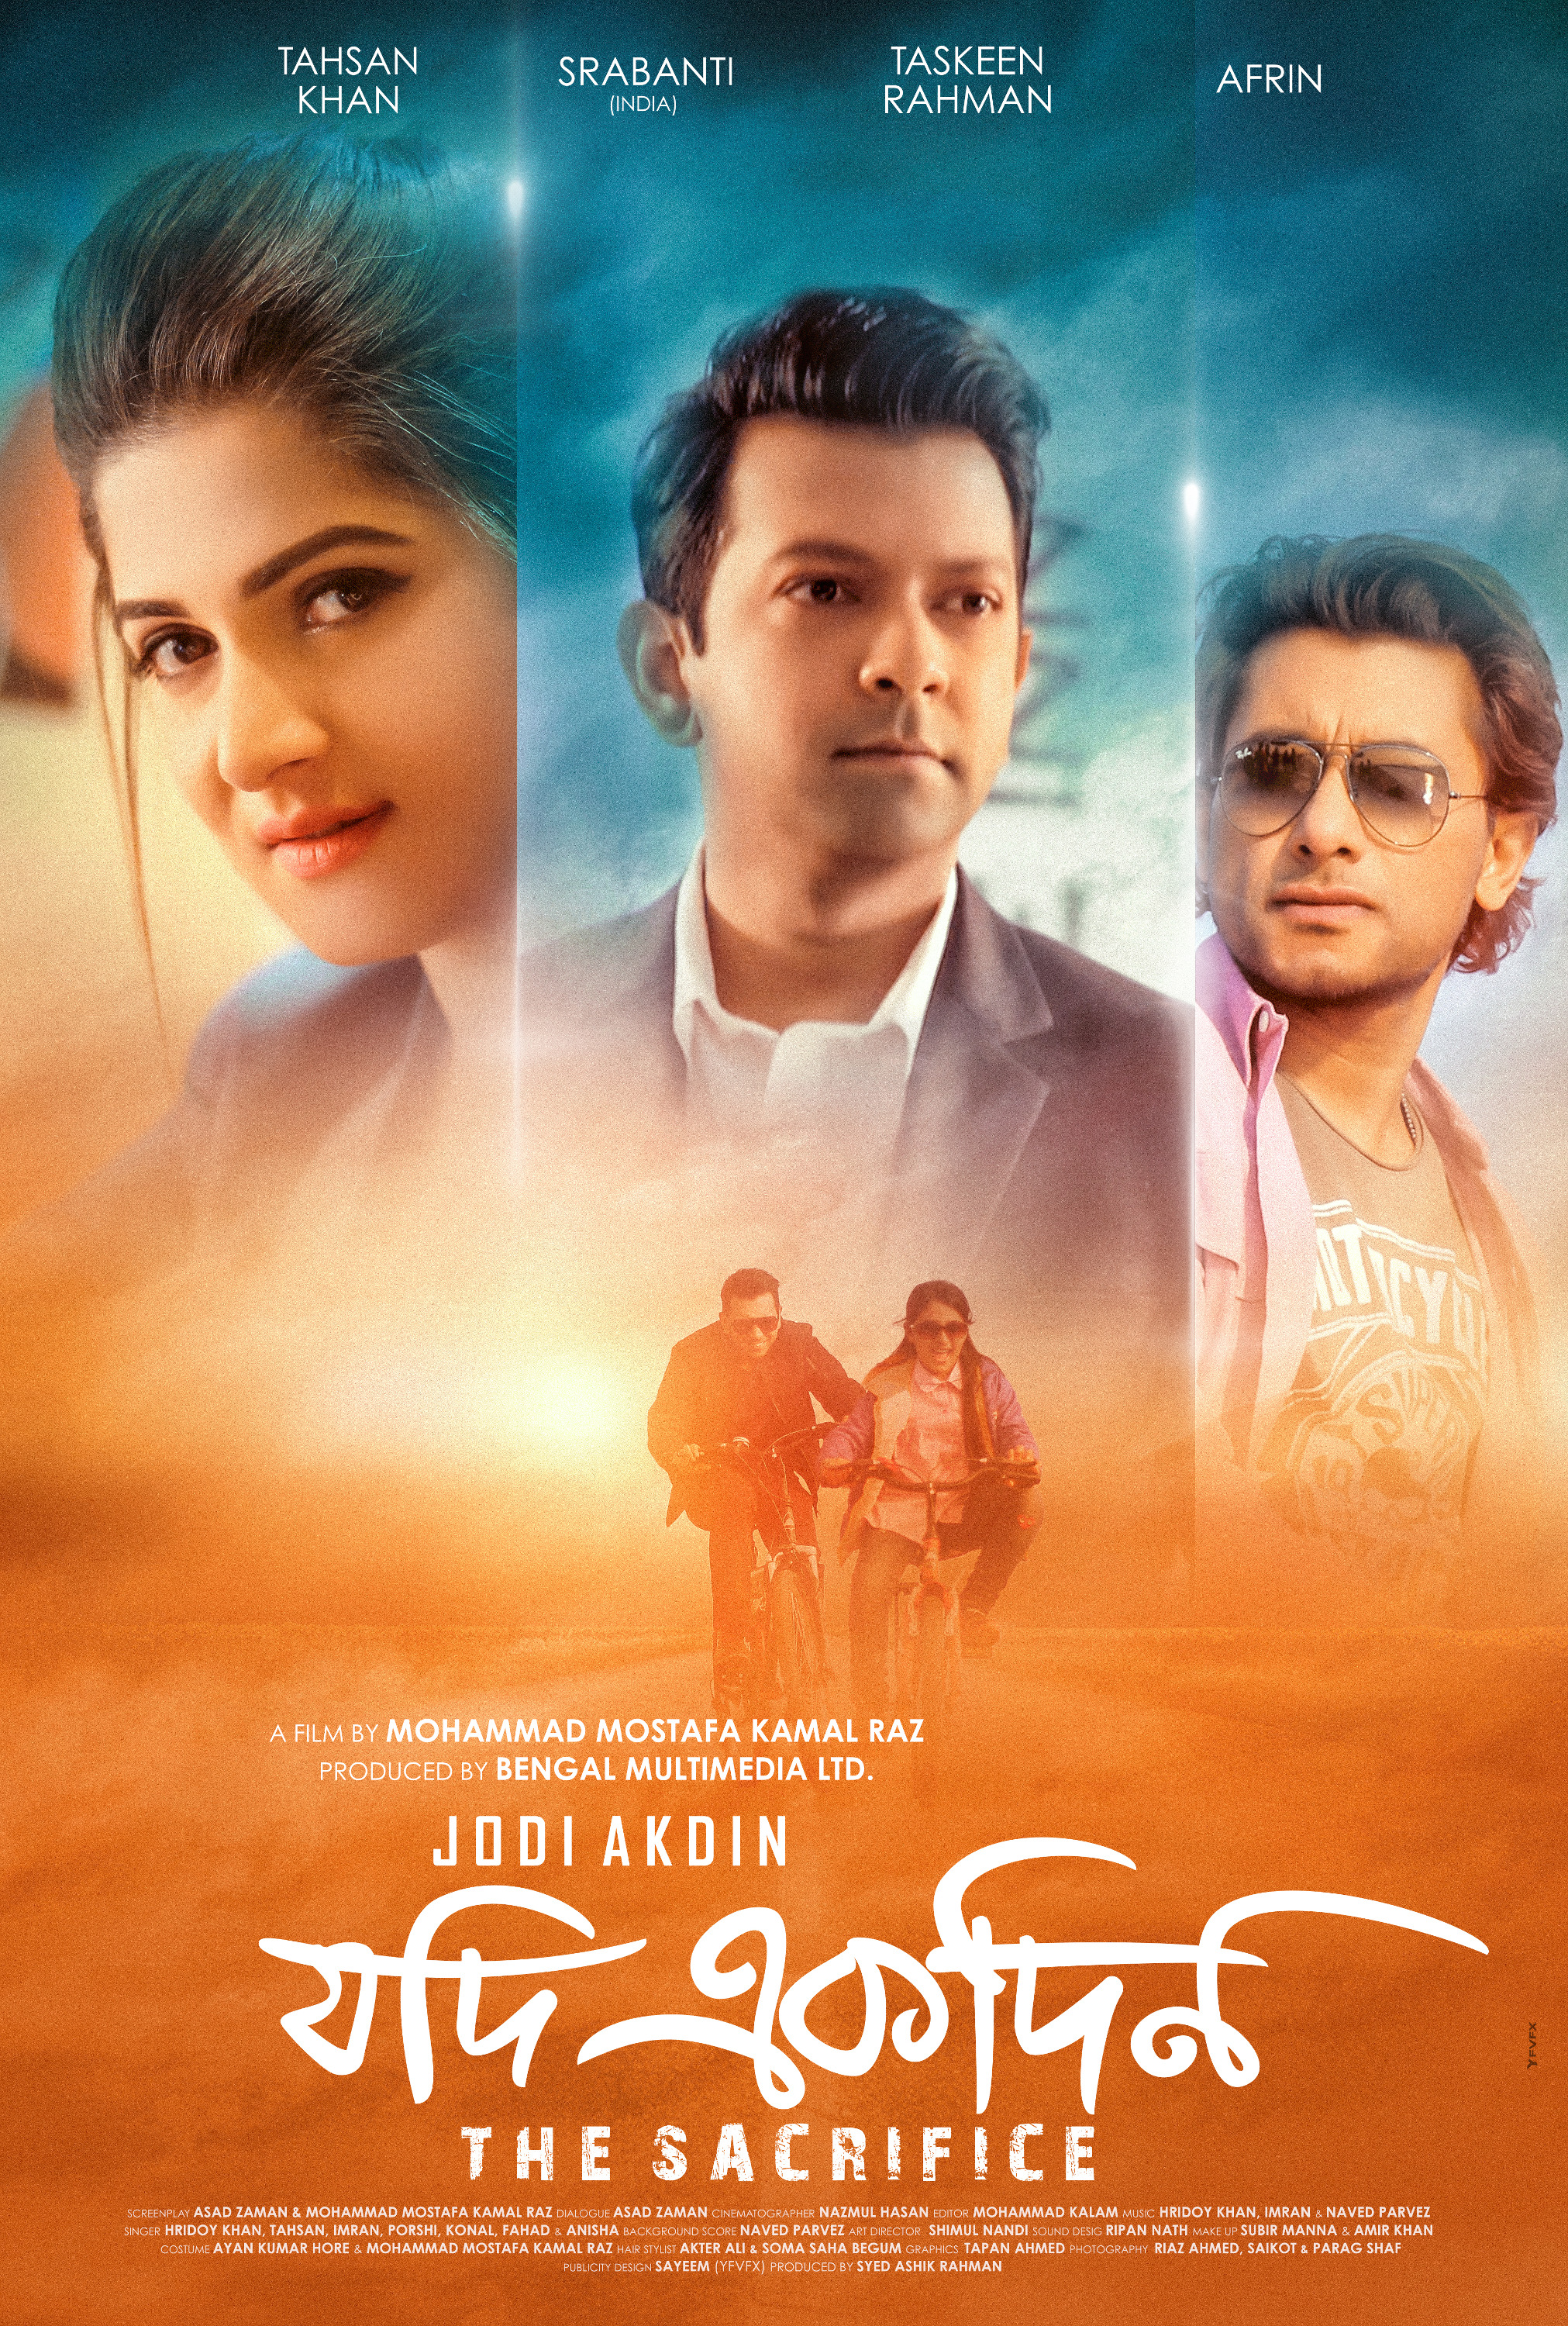 Mega Sized Movie Poster Image for Jodi Akdin 